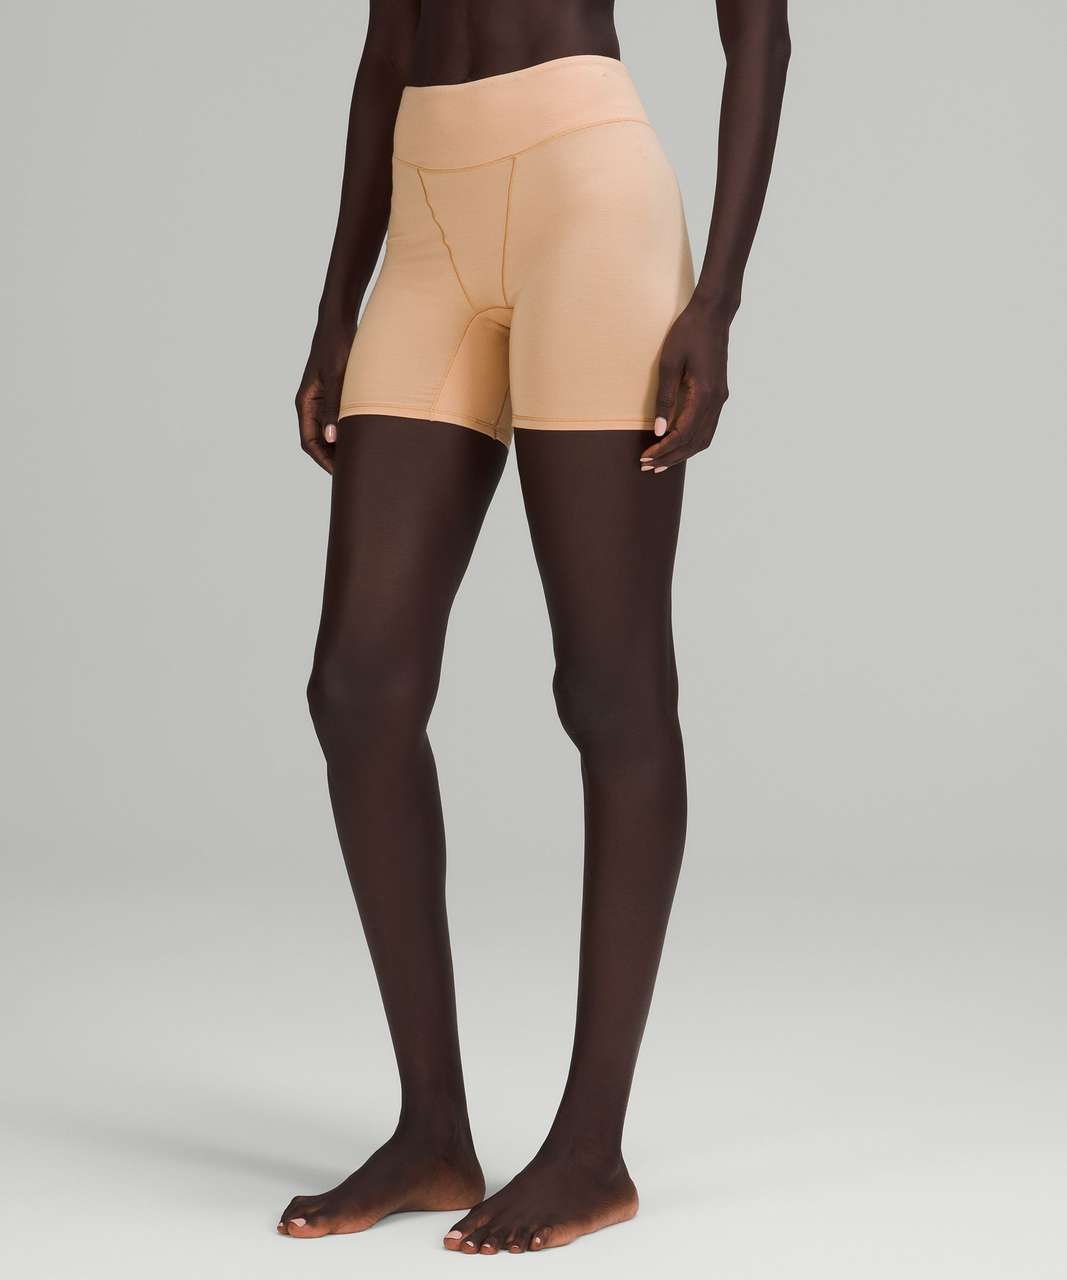 Lululemon UnderEase Super-High-Rise Shortie Underwear 5" - Contour